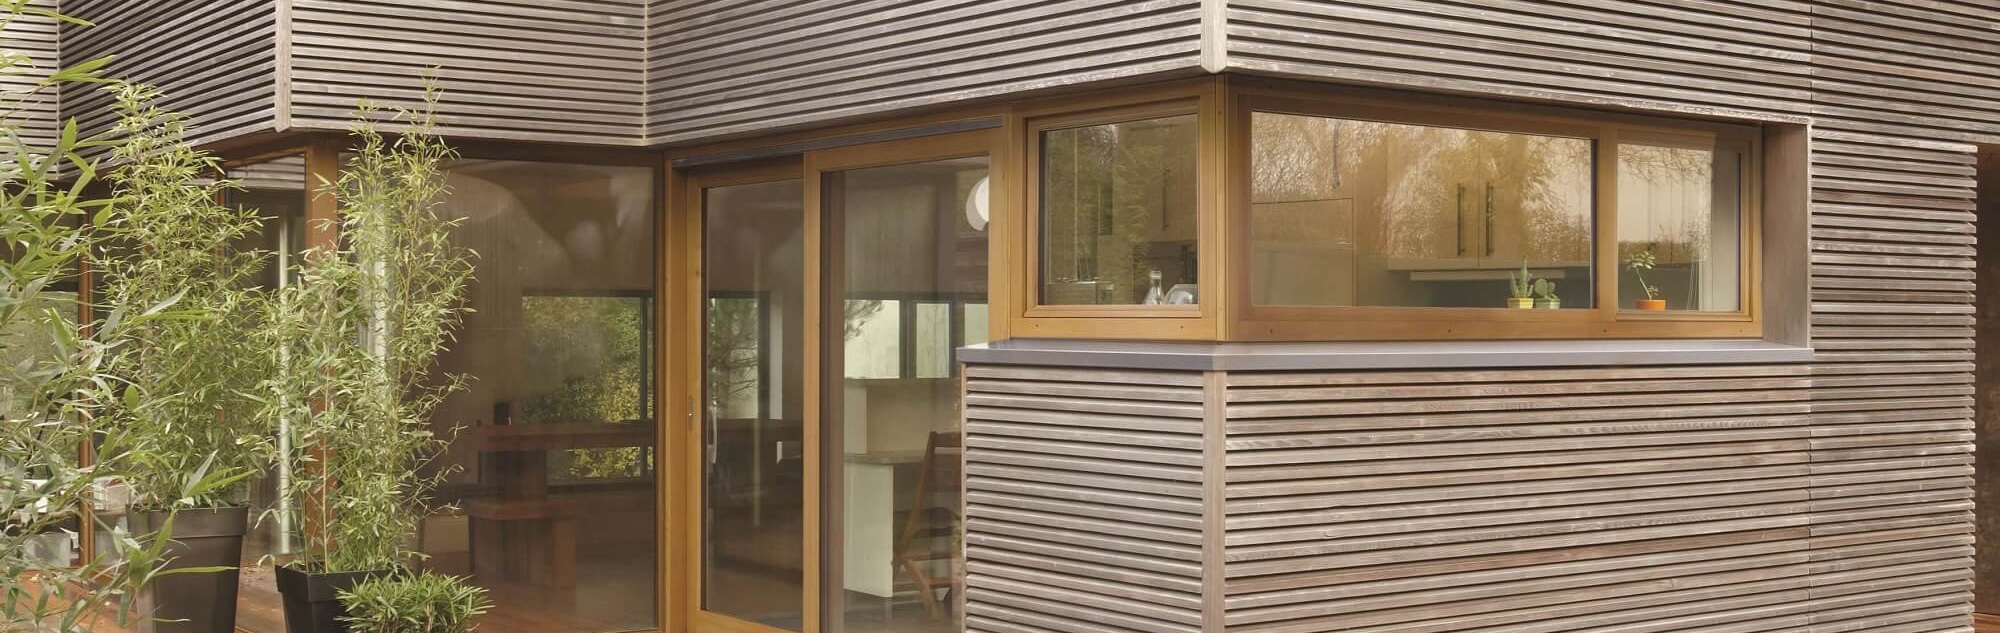 Fenêtres bois sur maison moderne ossature bois